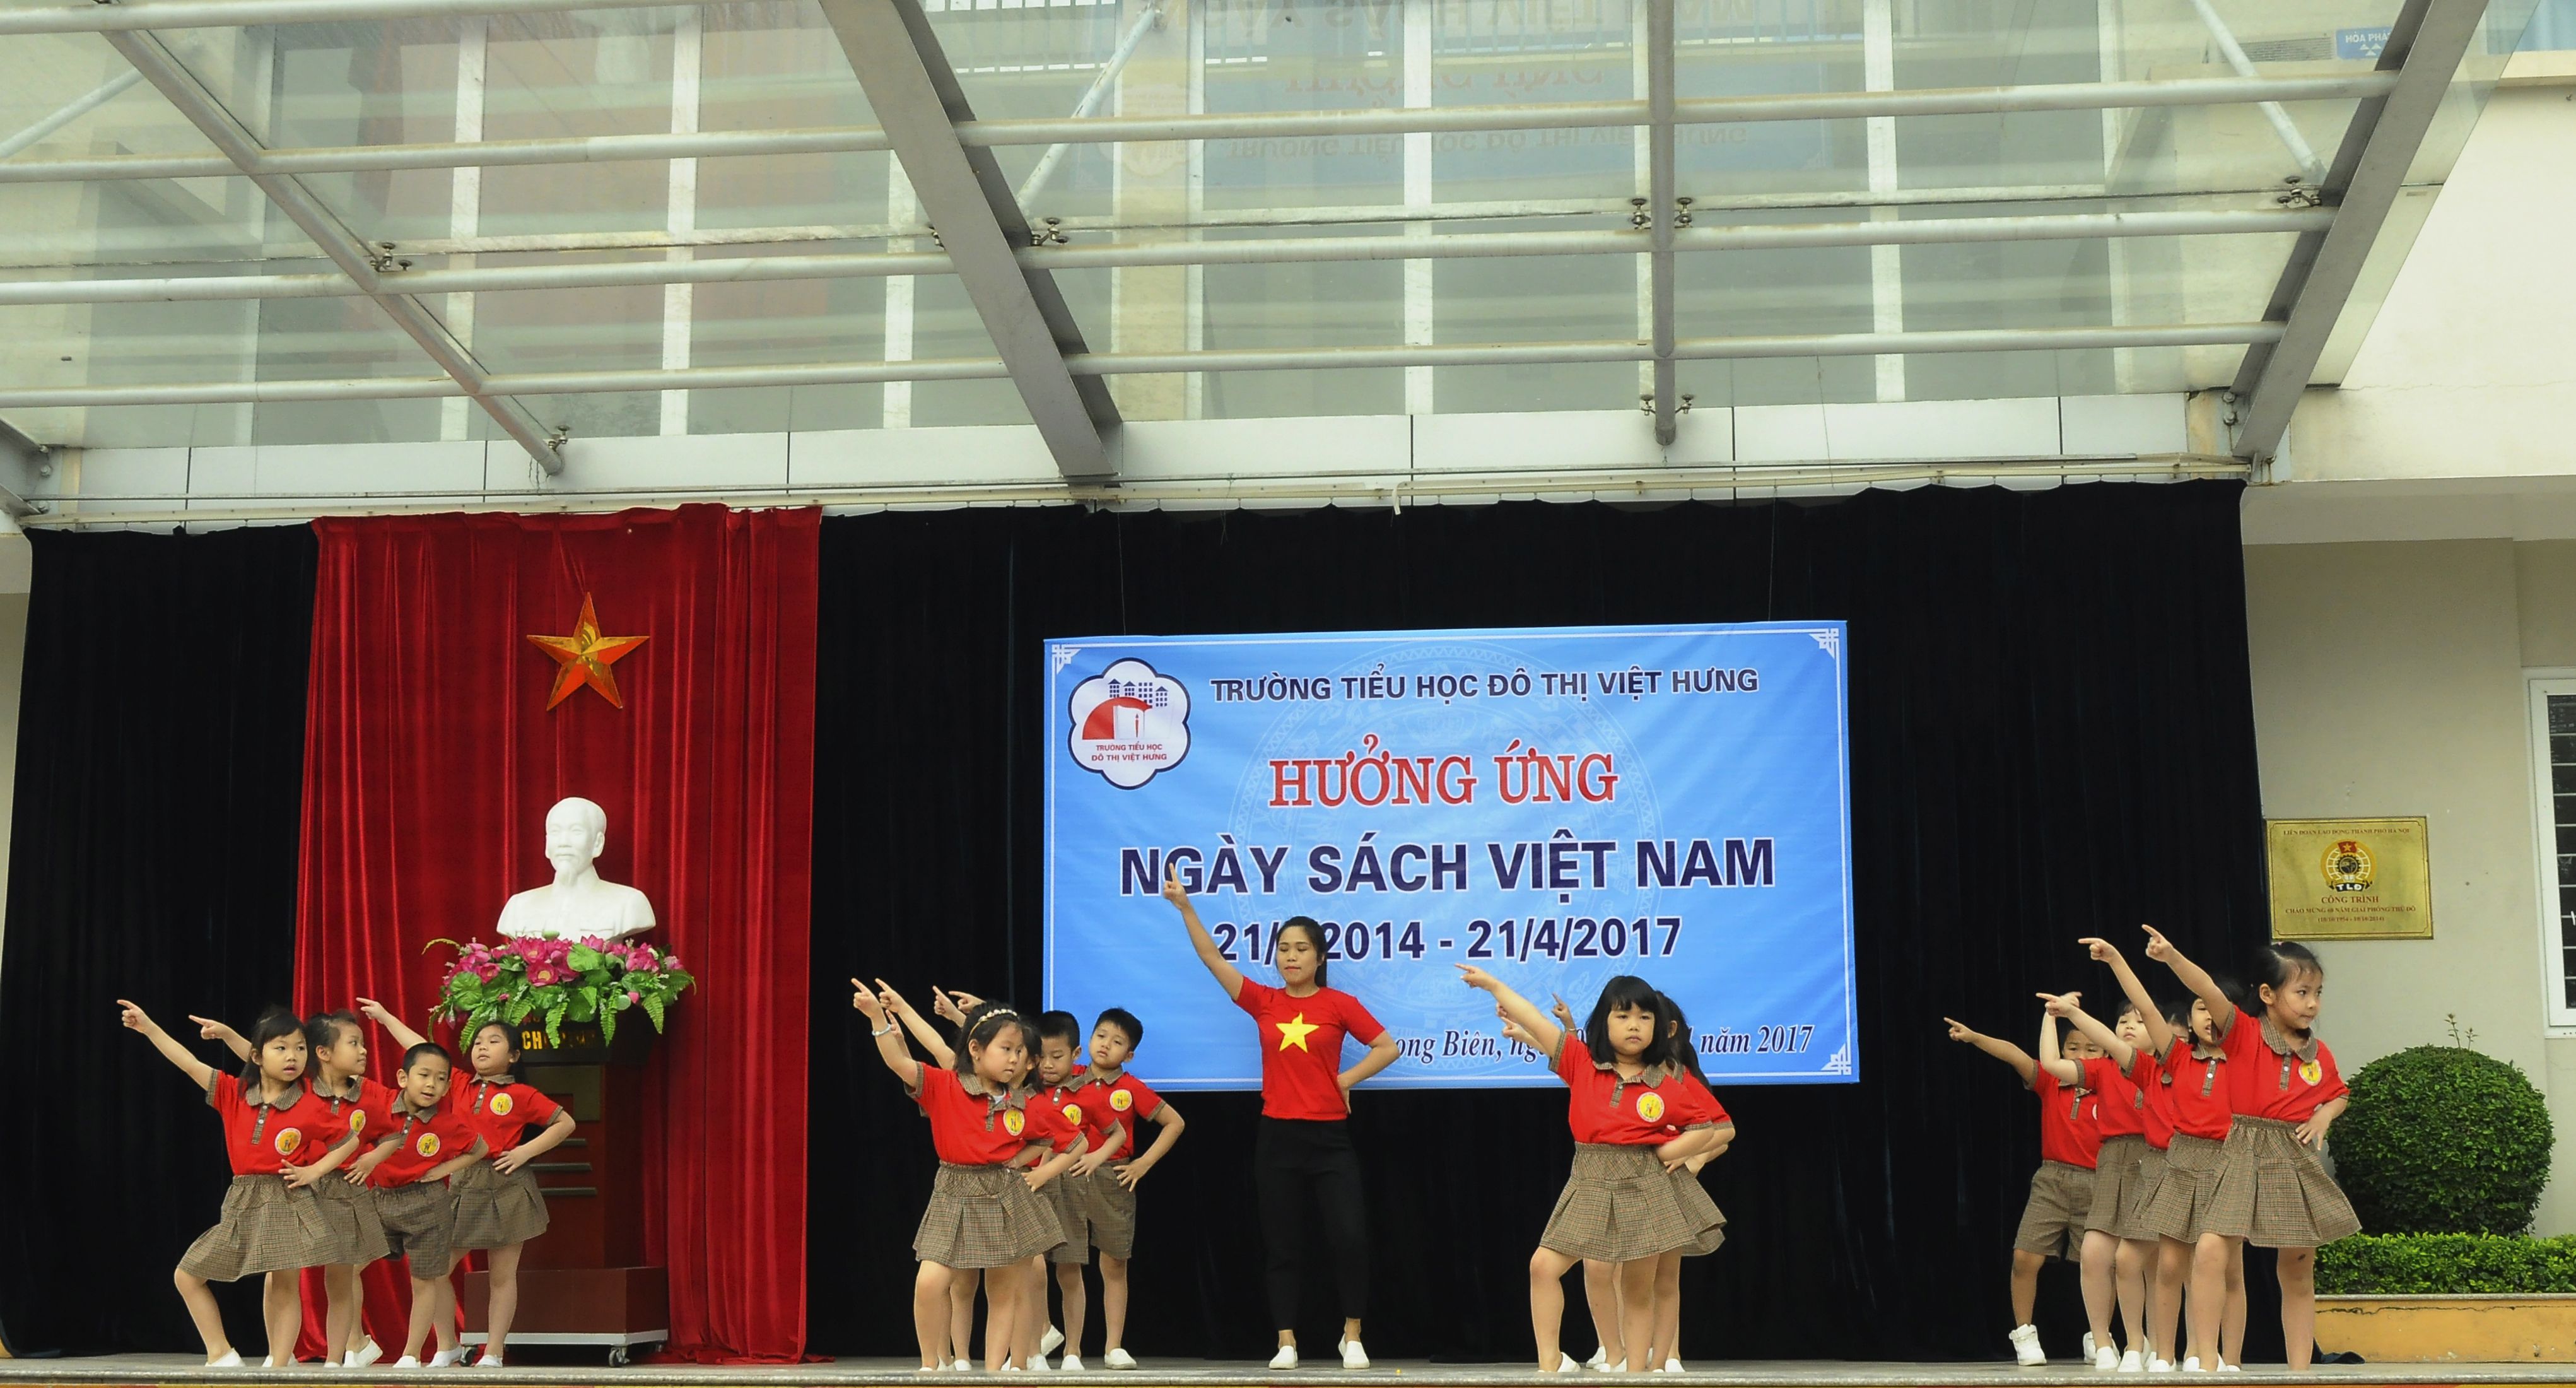 Khối mẫu giáo lớn giao lưu tại trường tiểu học Đô thị Việt hưng (19).jpg